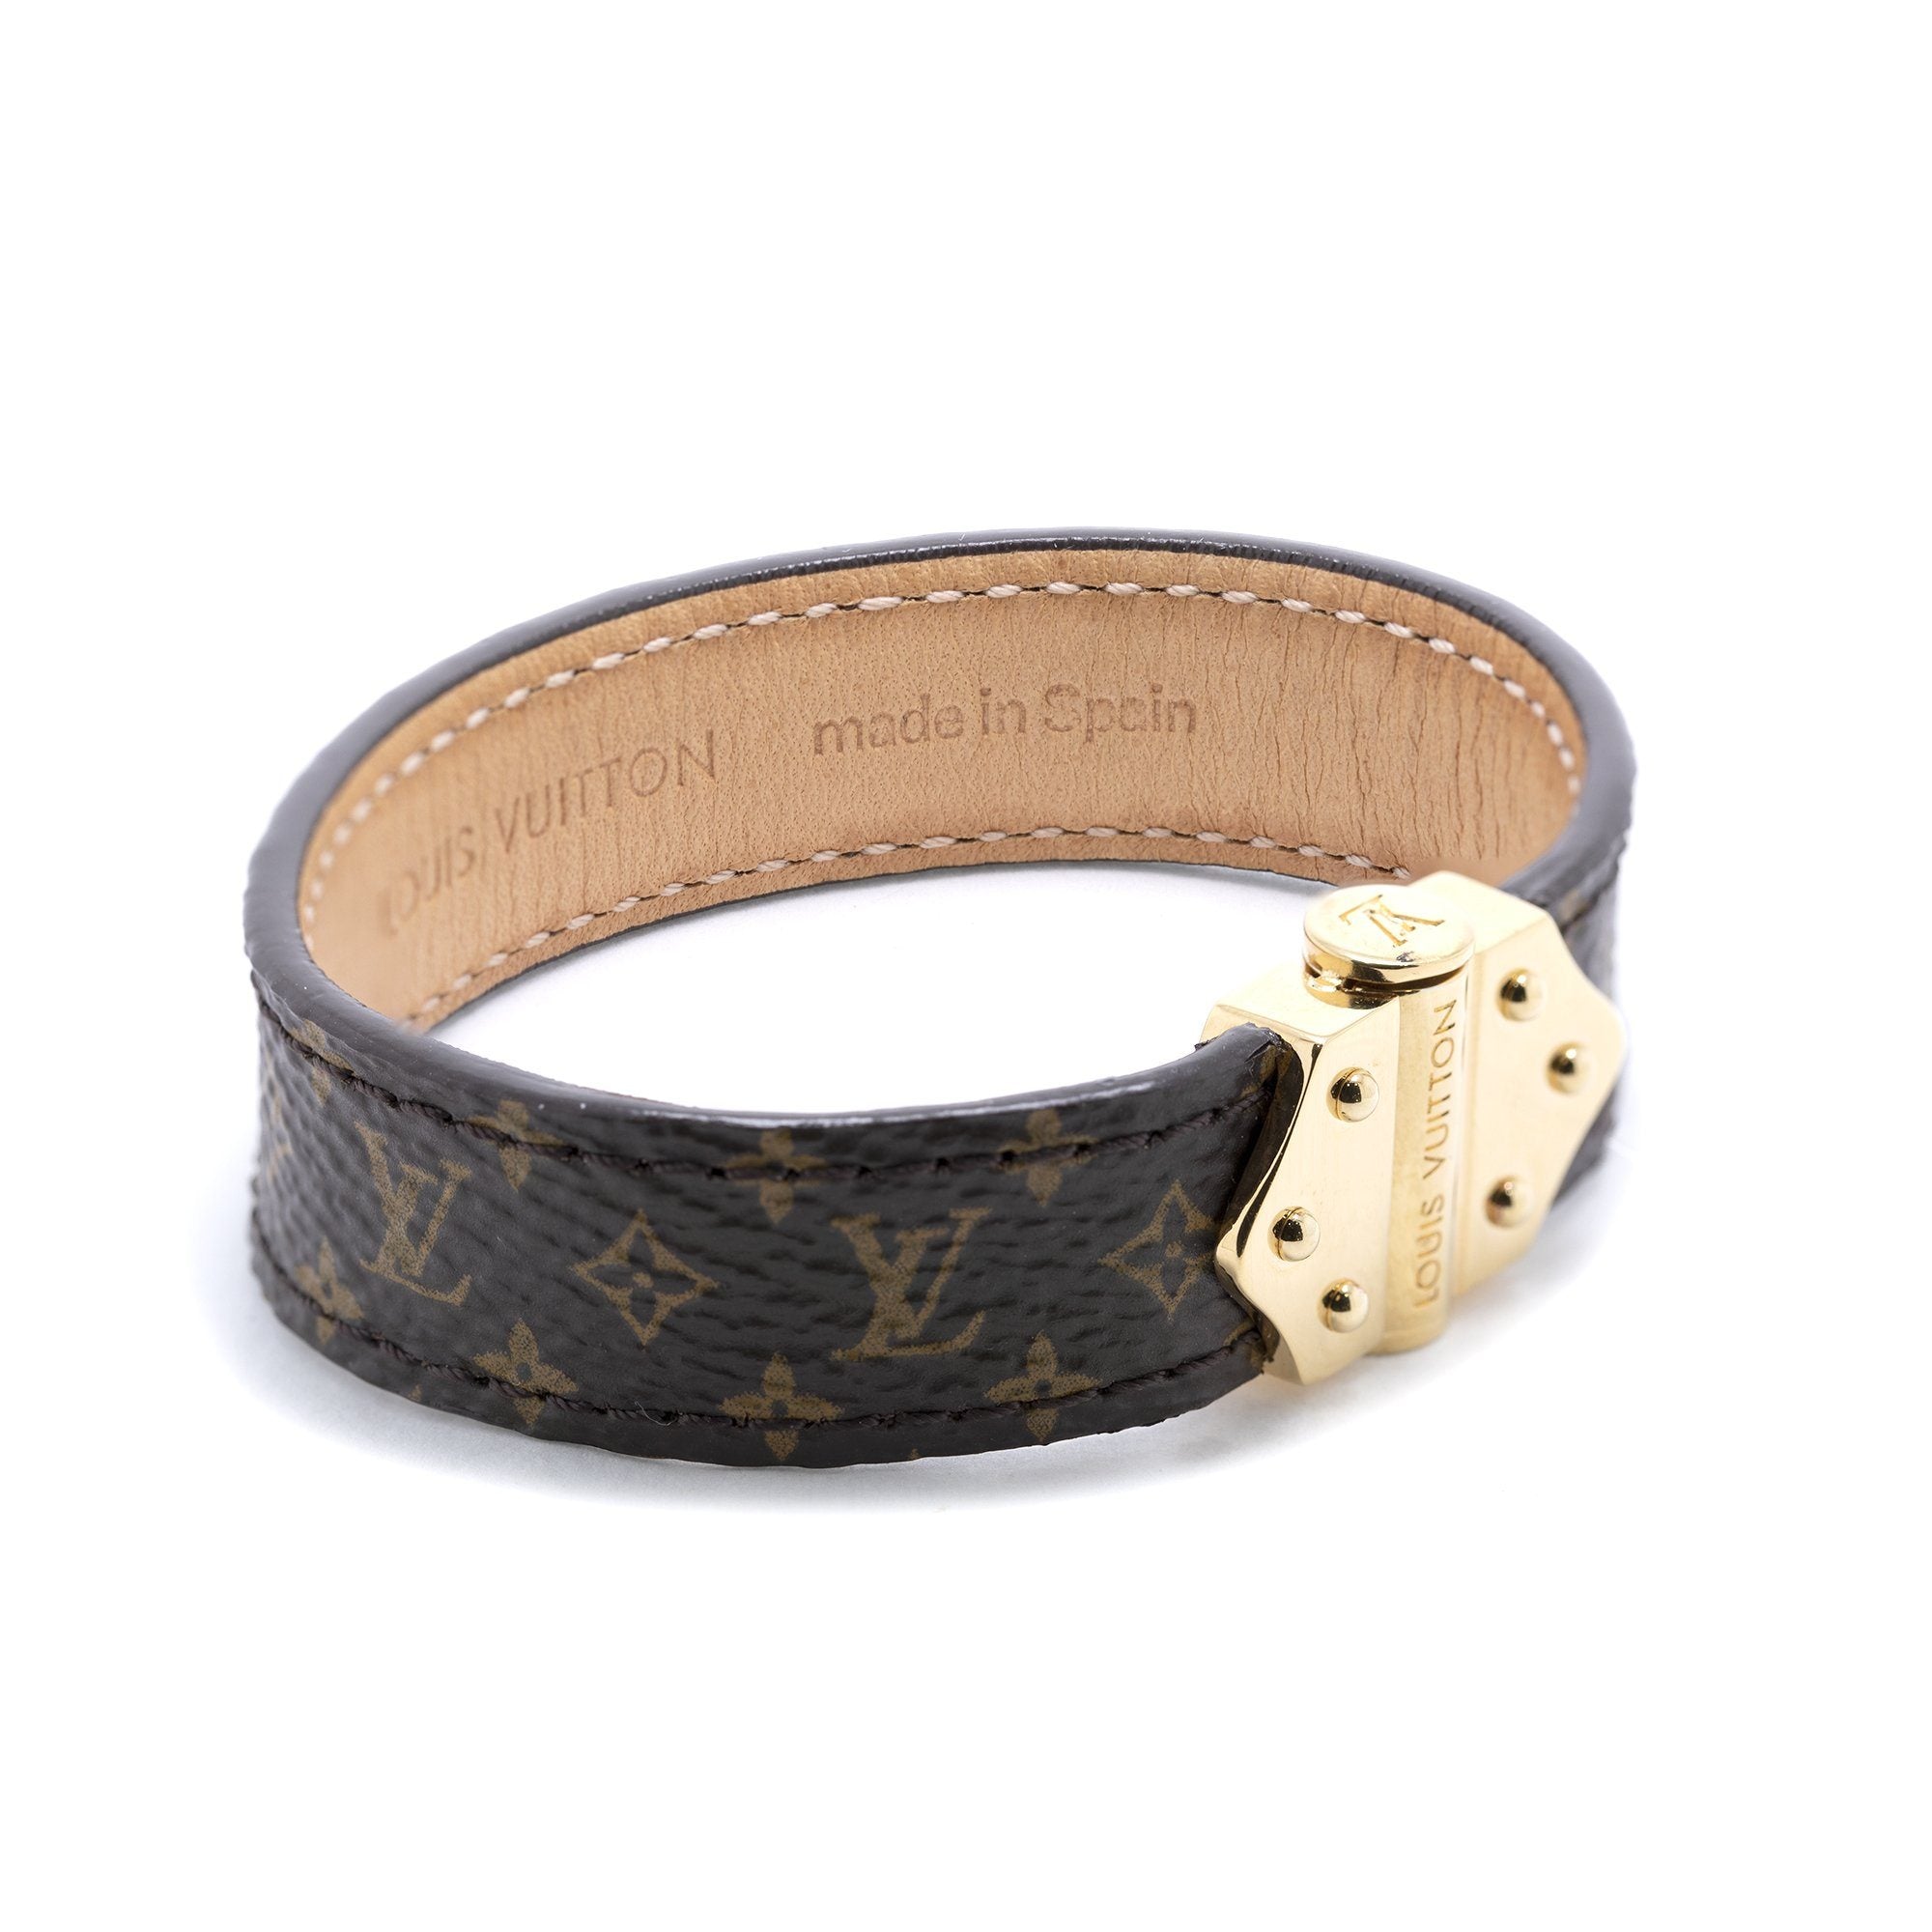 Louis Vuitton SS19 Monogram Bracelet & Necklace